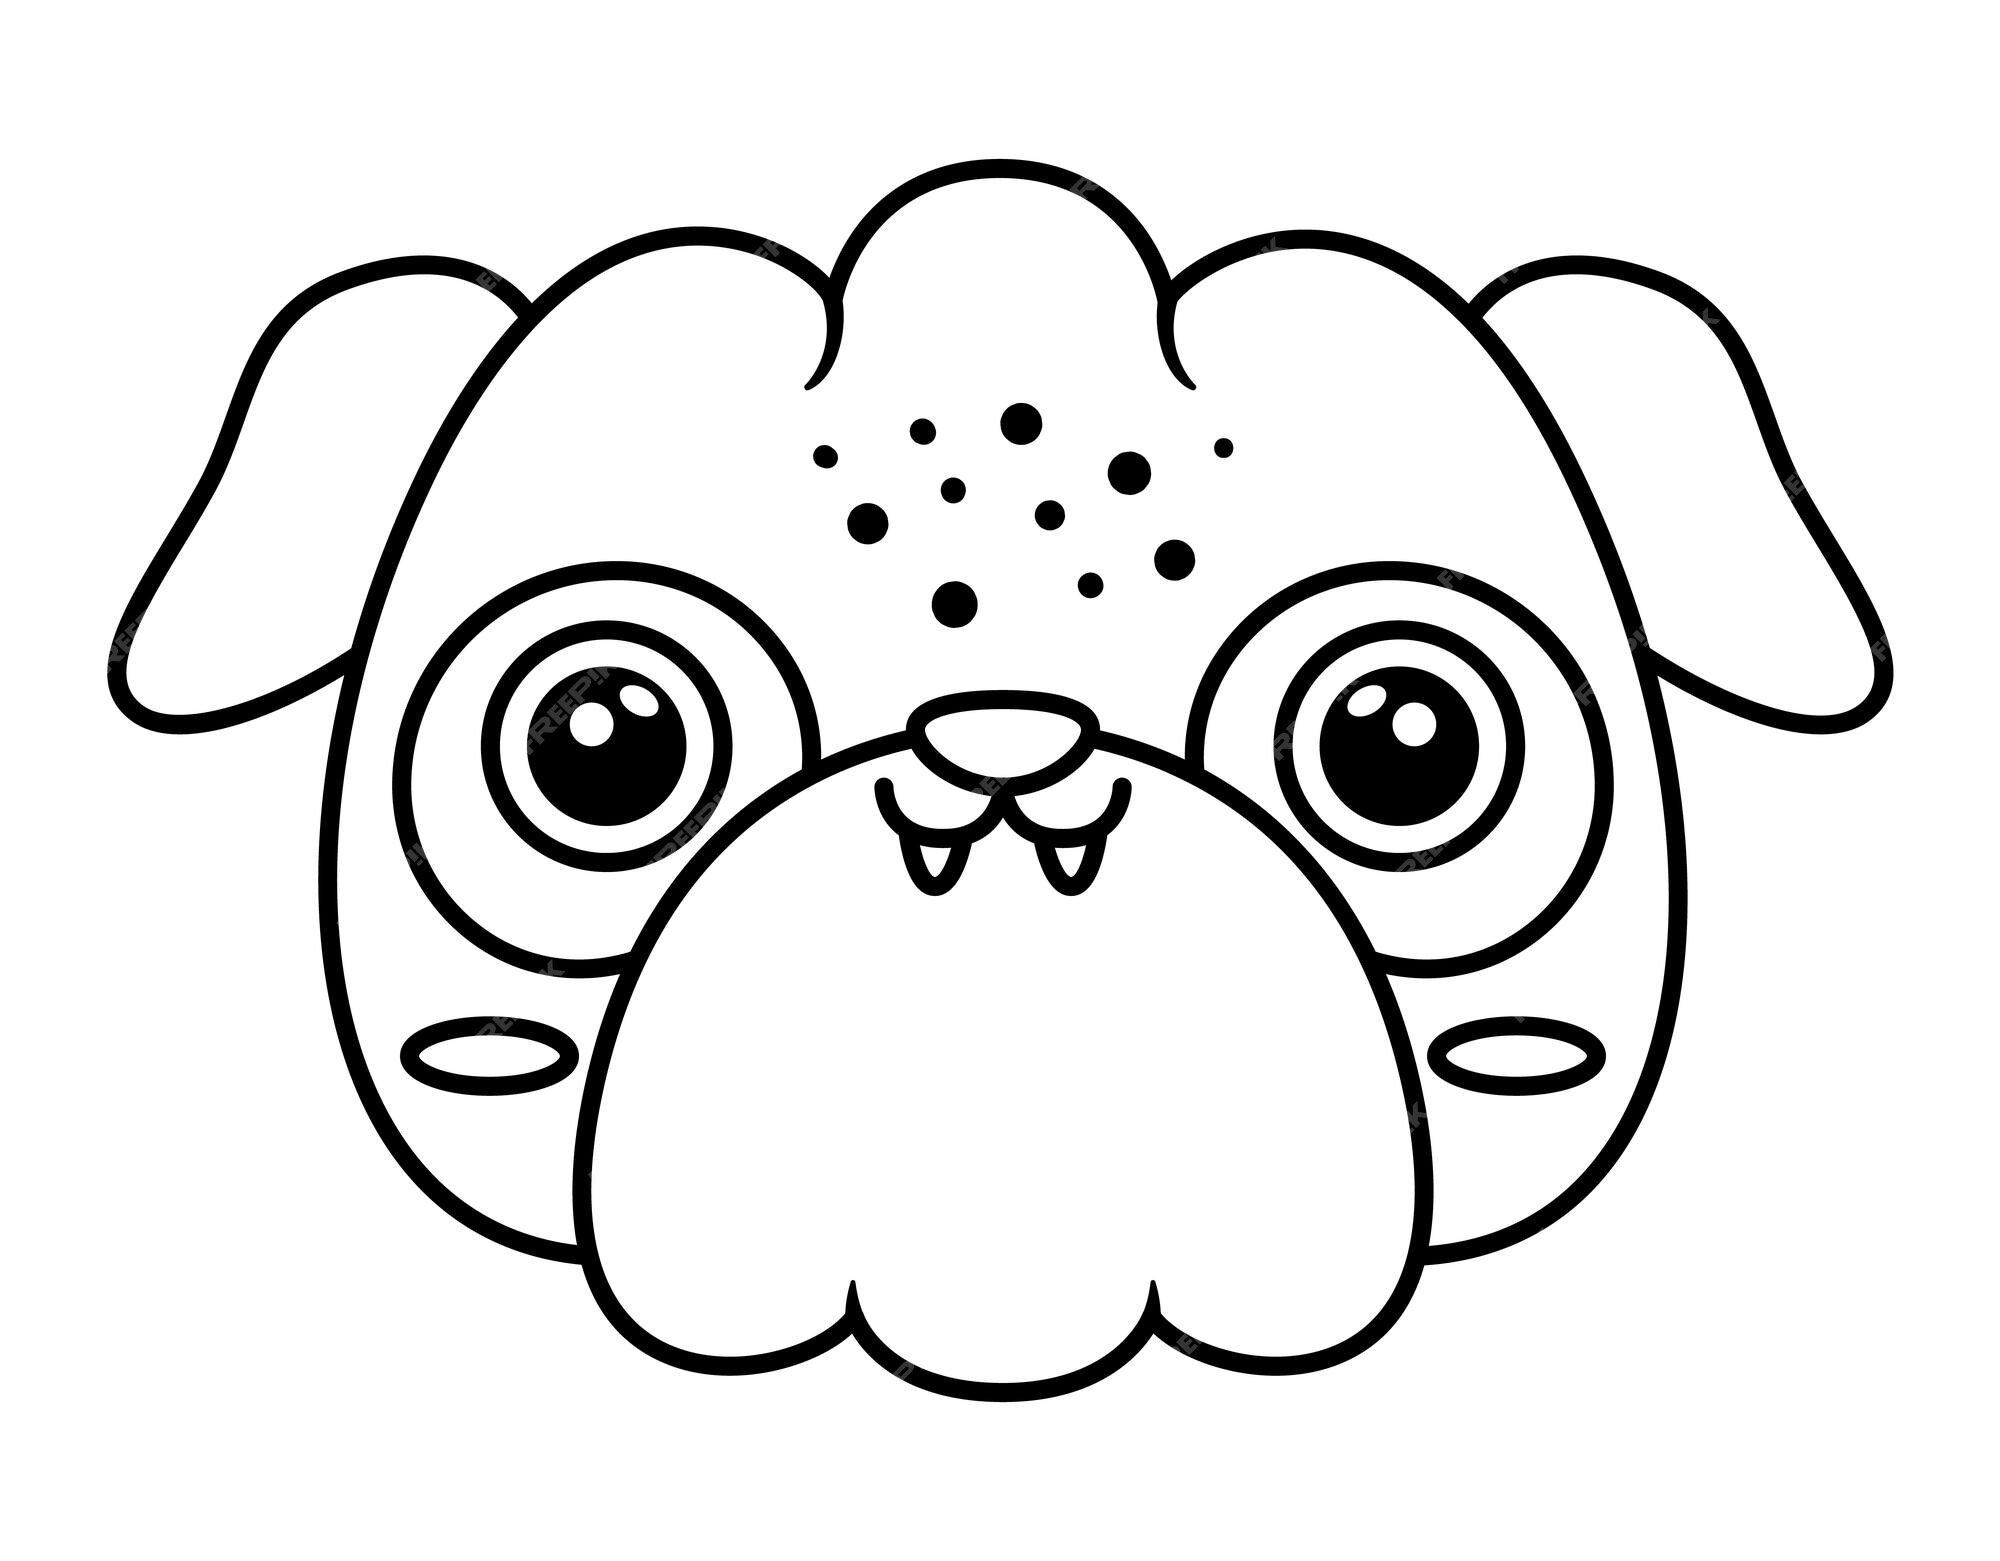 Desenho e Imagem Pug Filhote De Cachorro para Colorir e Imprimir Grátis  para Adultos e Crianças 